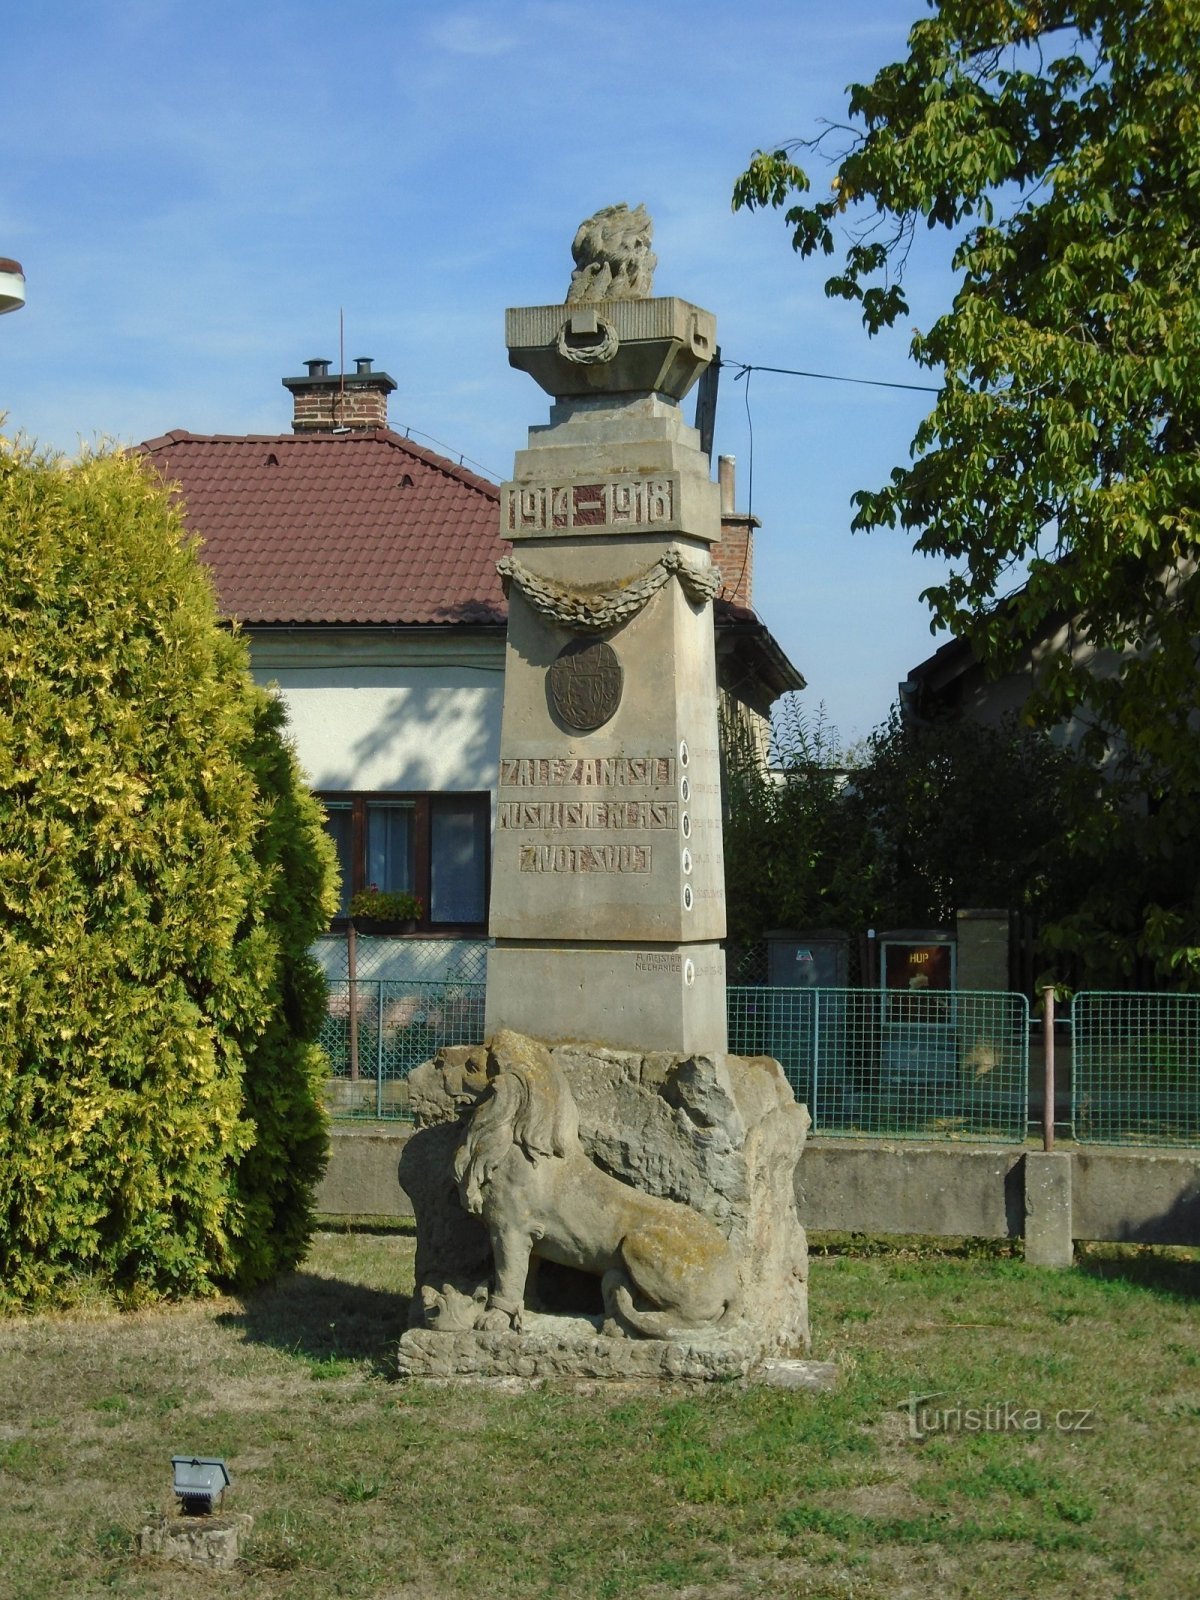 Đài tưởng niệm những người đã chết trong Chiến tranh thế giới thứ nhất (Třesovice)